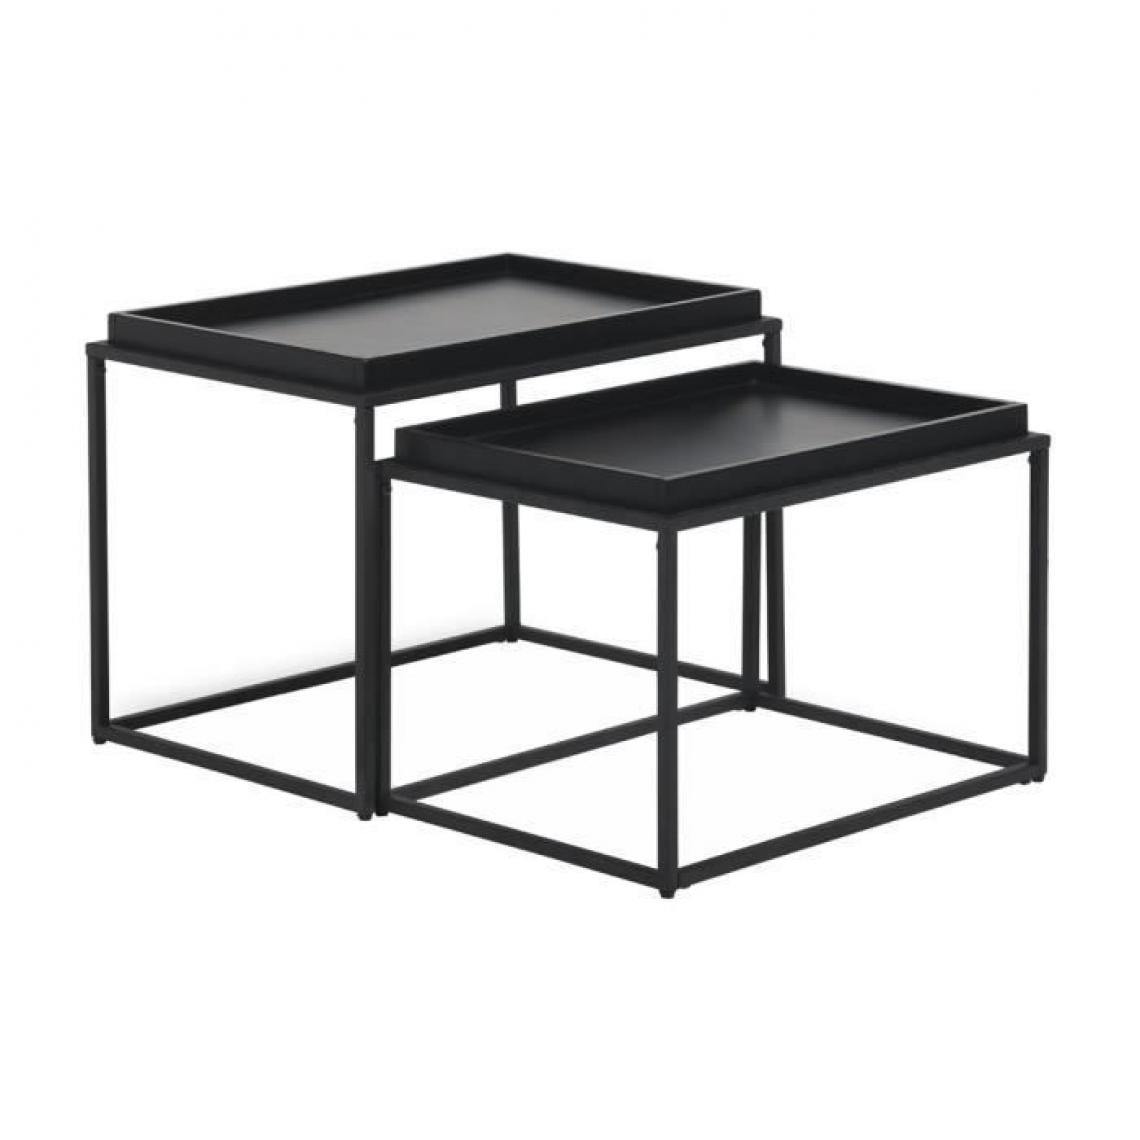 Cstore - KENTIA - tables gigognes laqué et pieds en métal noir l 60xp 40xh 45 cm et l 55xp 38xh 38 cm - Tables à manger